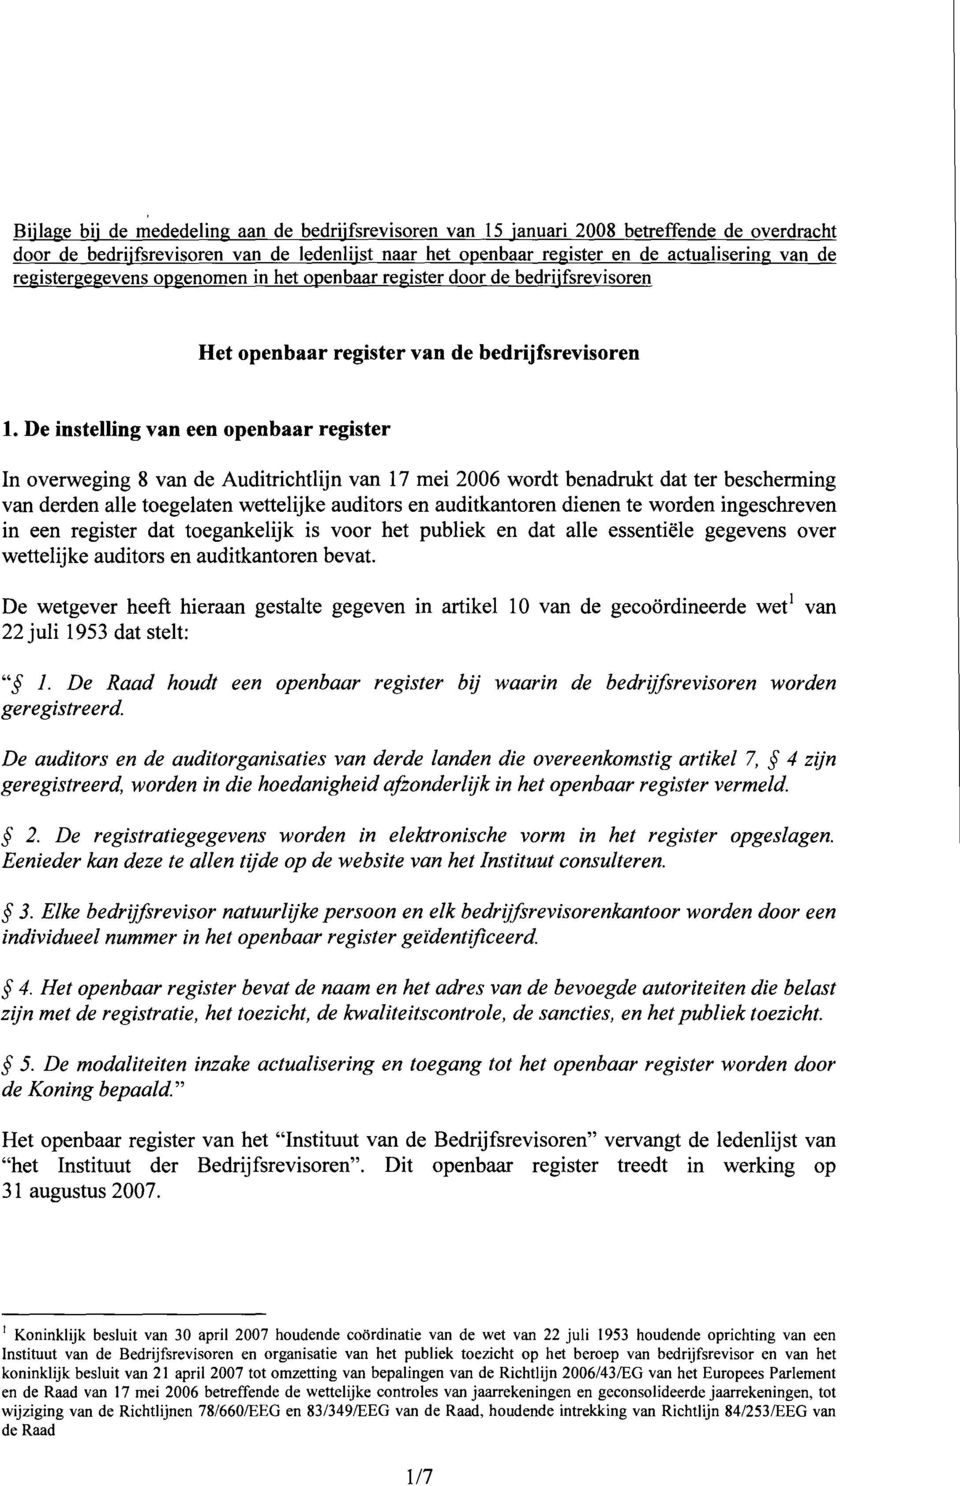 De instelling van een openbaar register In overweging 8 van de Auditrichtlijn van 17 mei 2006 wordt benadrukt dat ter bescherming van derden alle toegelaten wettelijke auditors en auditkantoren